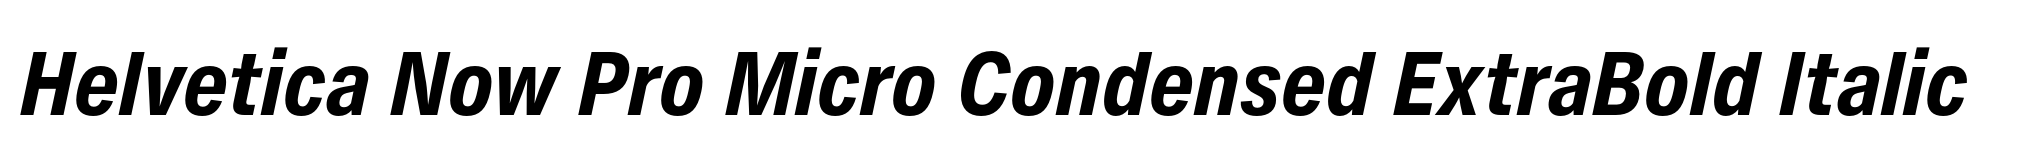 Helvetica Now Pro Micro Condensed ExtraBold Italic image